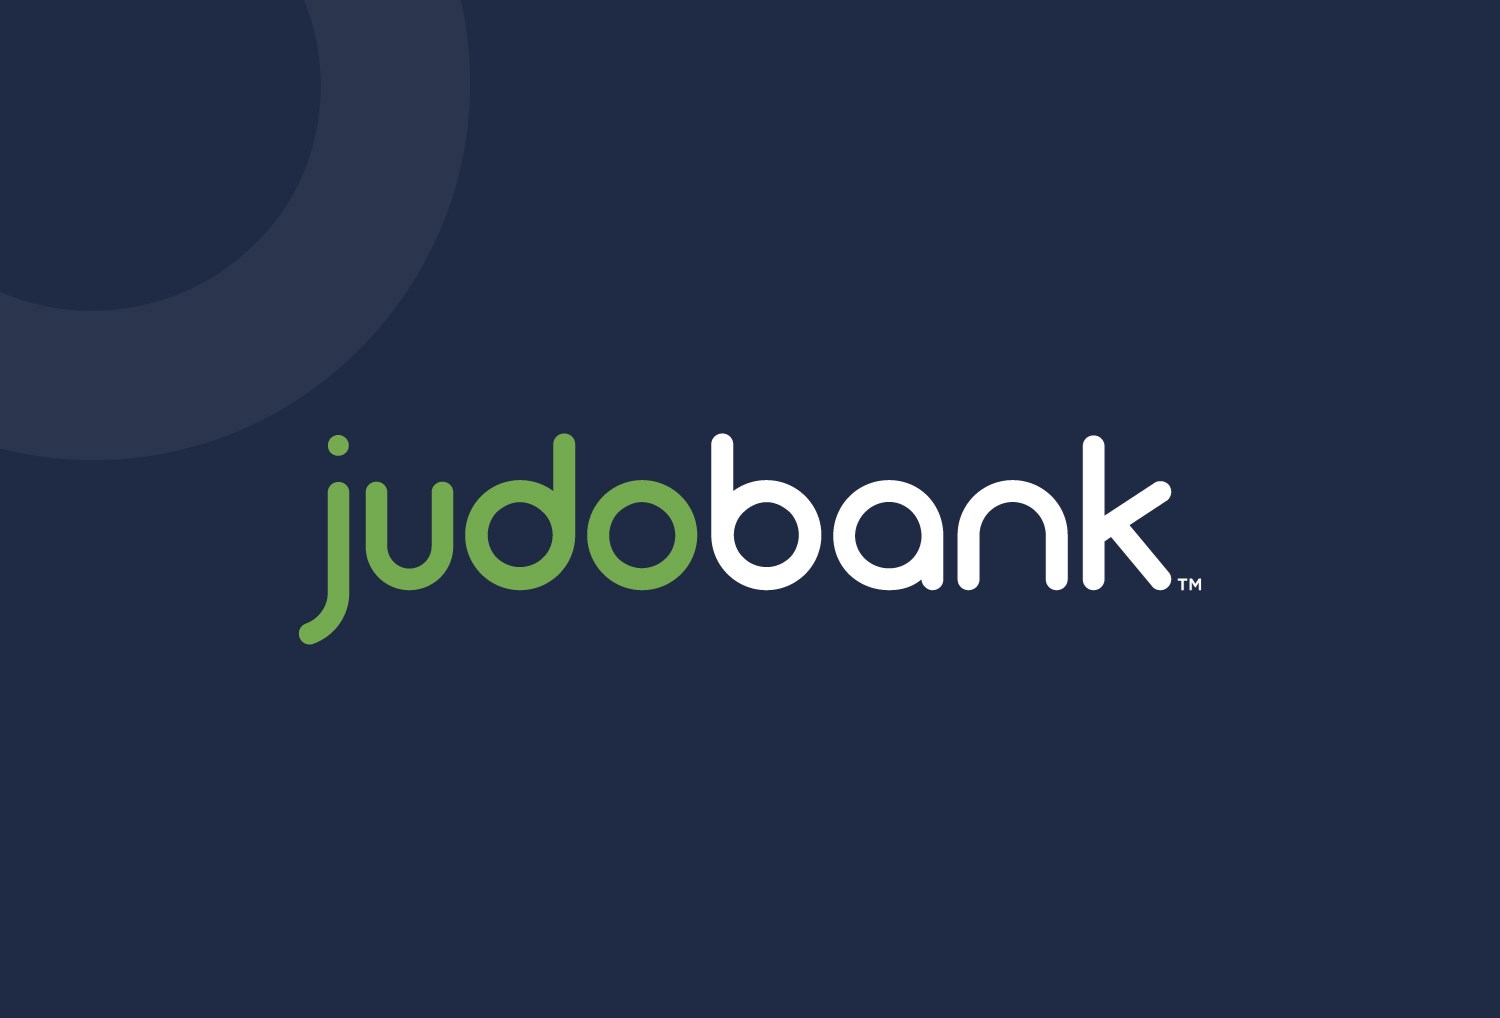 judo bank presentation